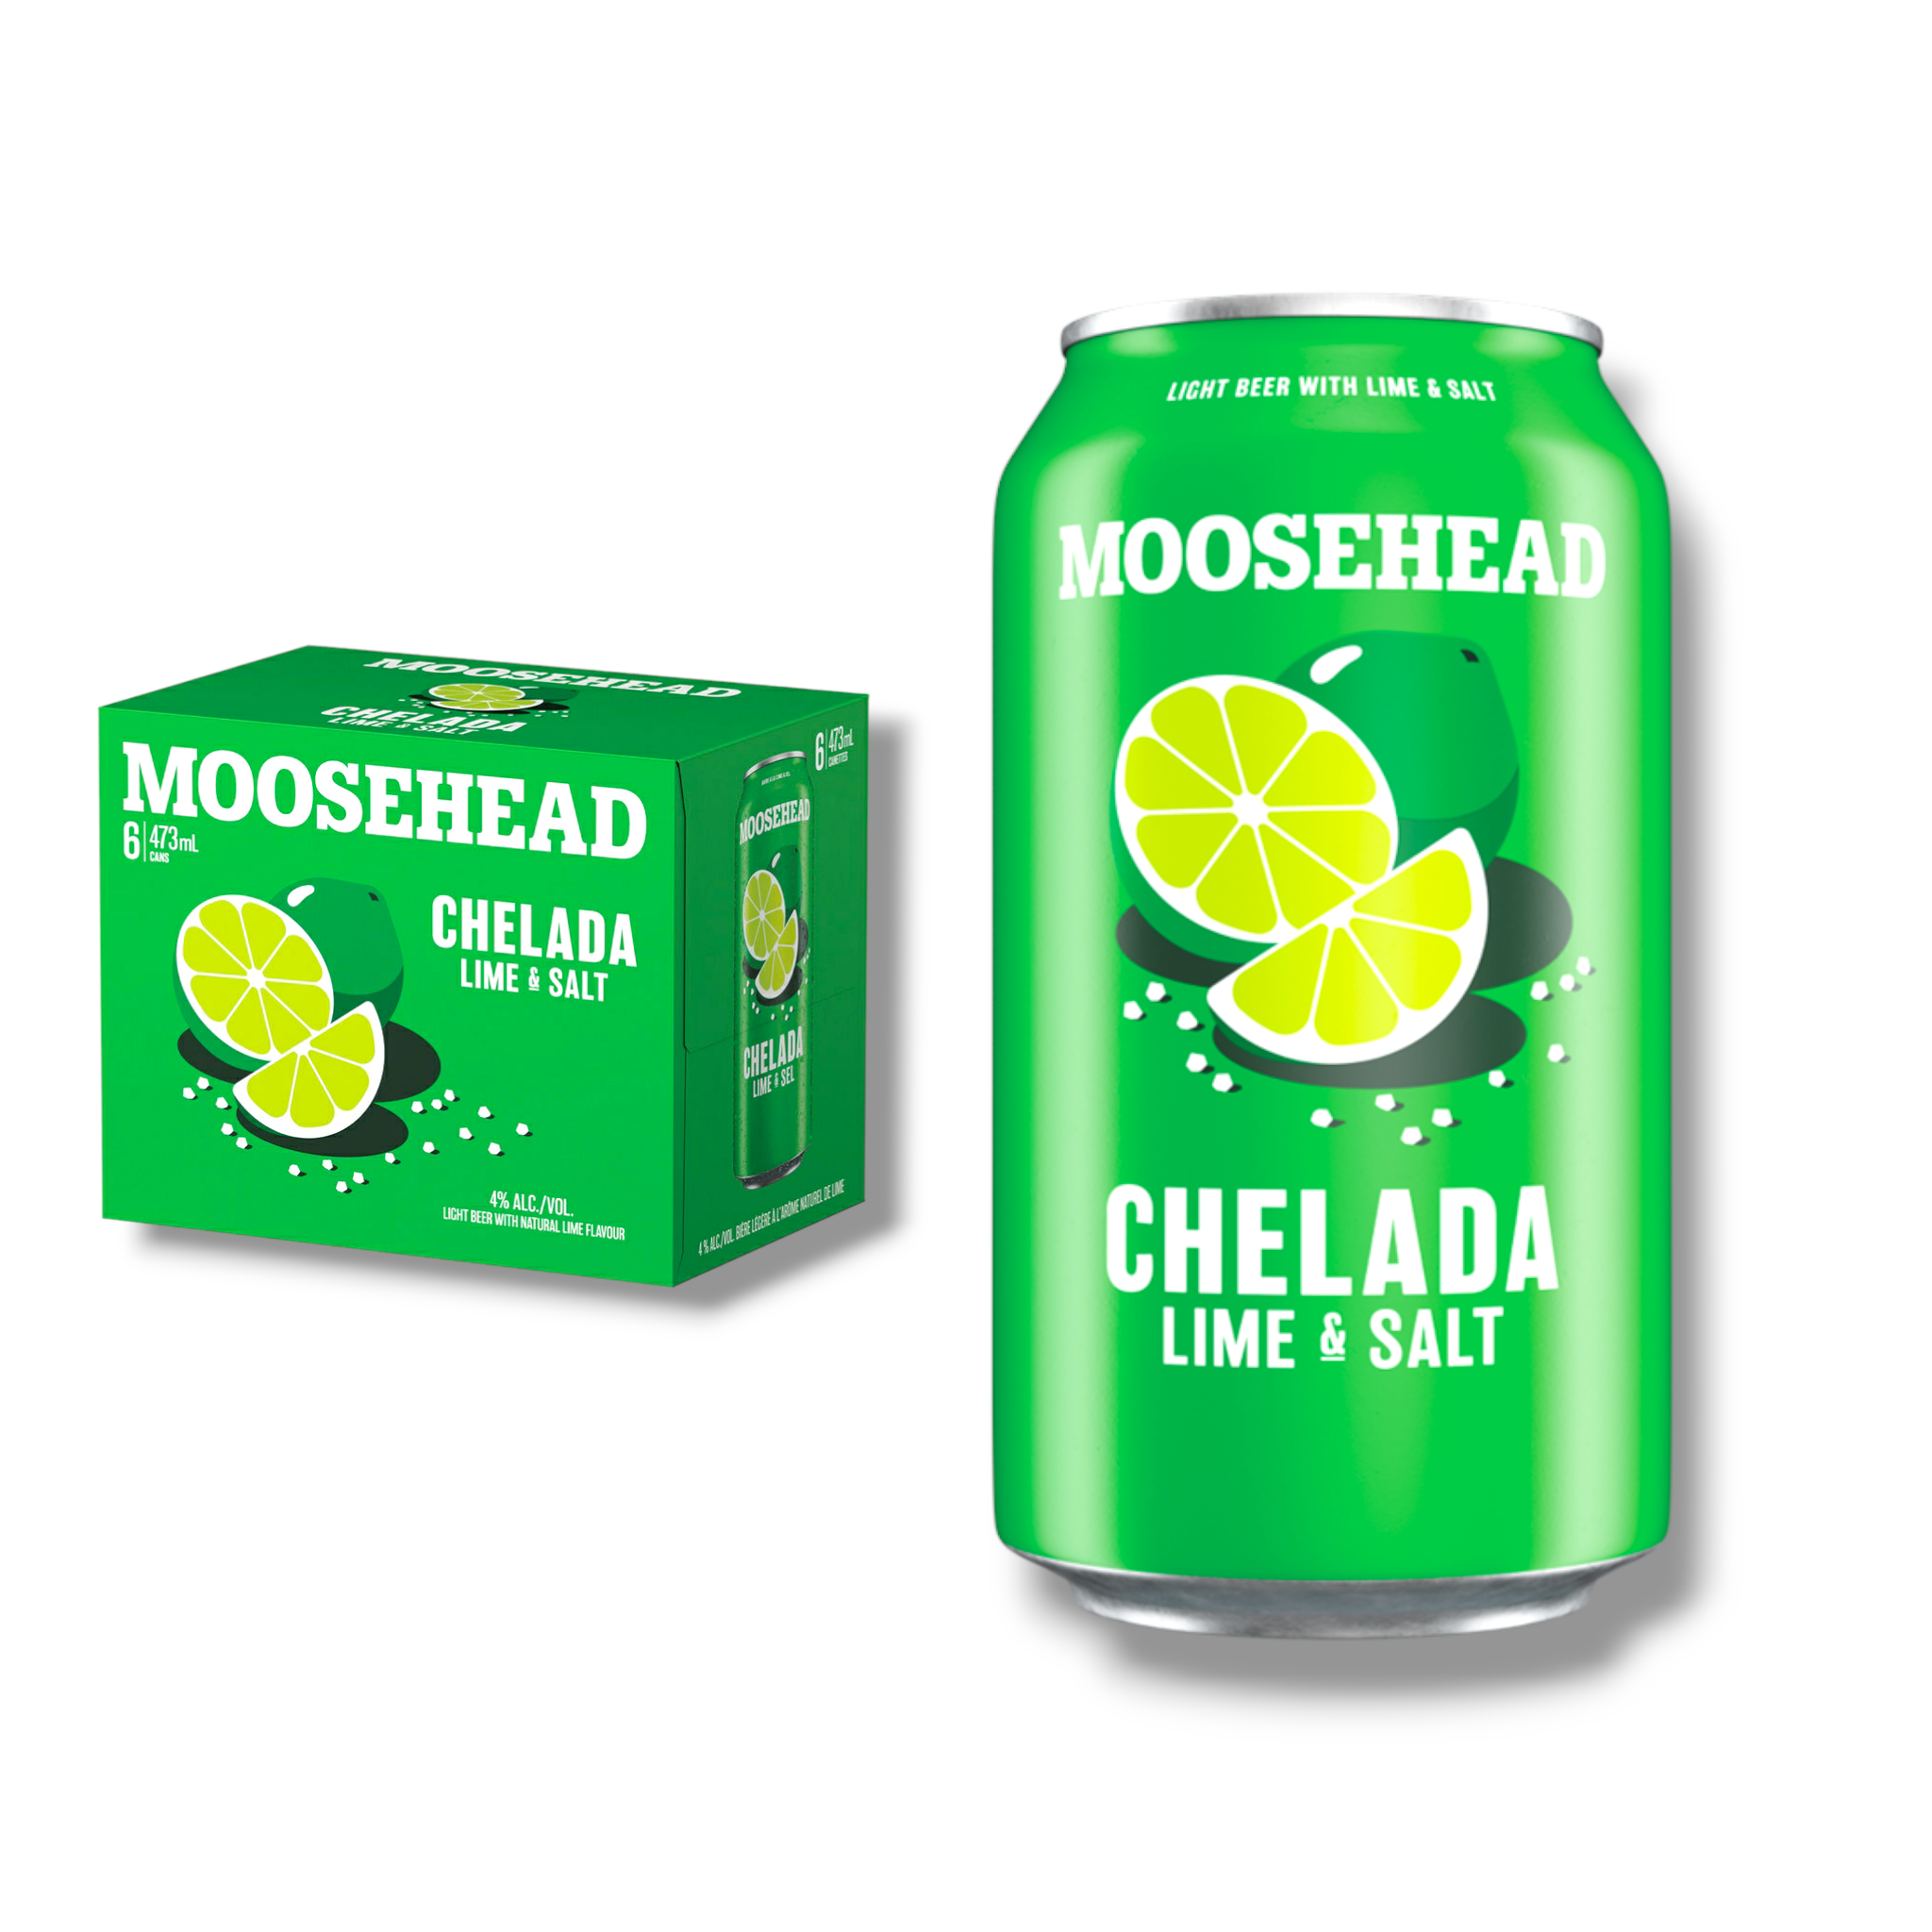 Moosehead Chelada 355ml Dose - Lime & Salt - Lager mit Limette & einem Hauch Salz aus Kanada mit 4% Vol.